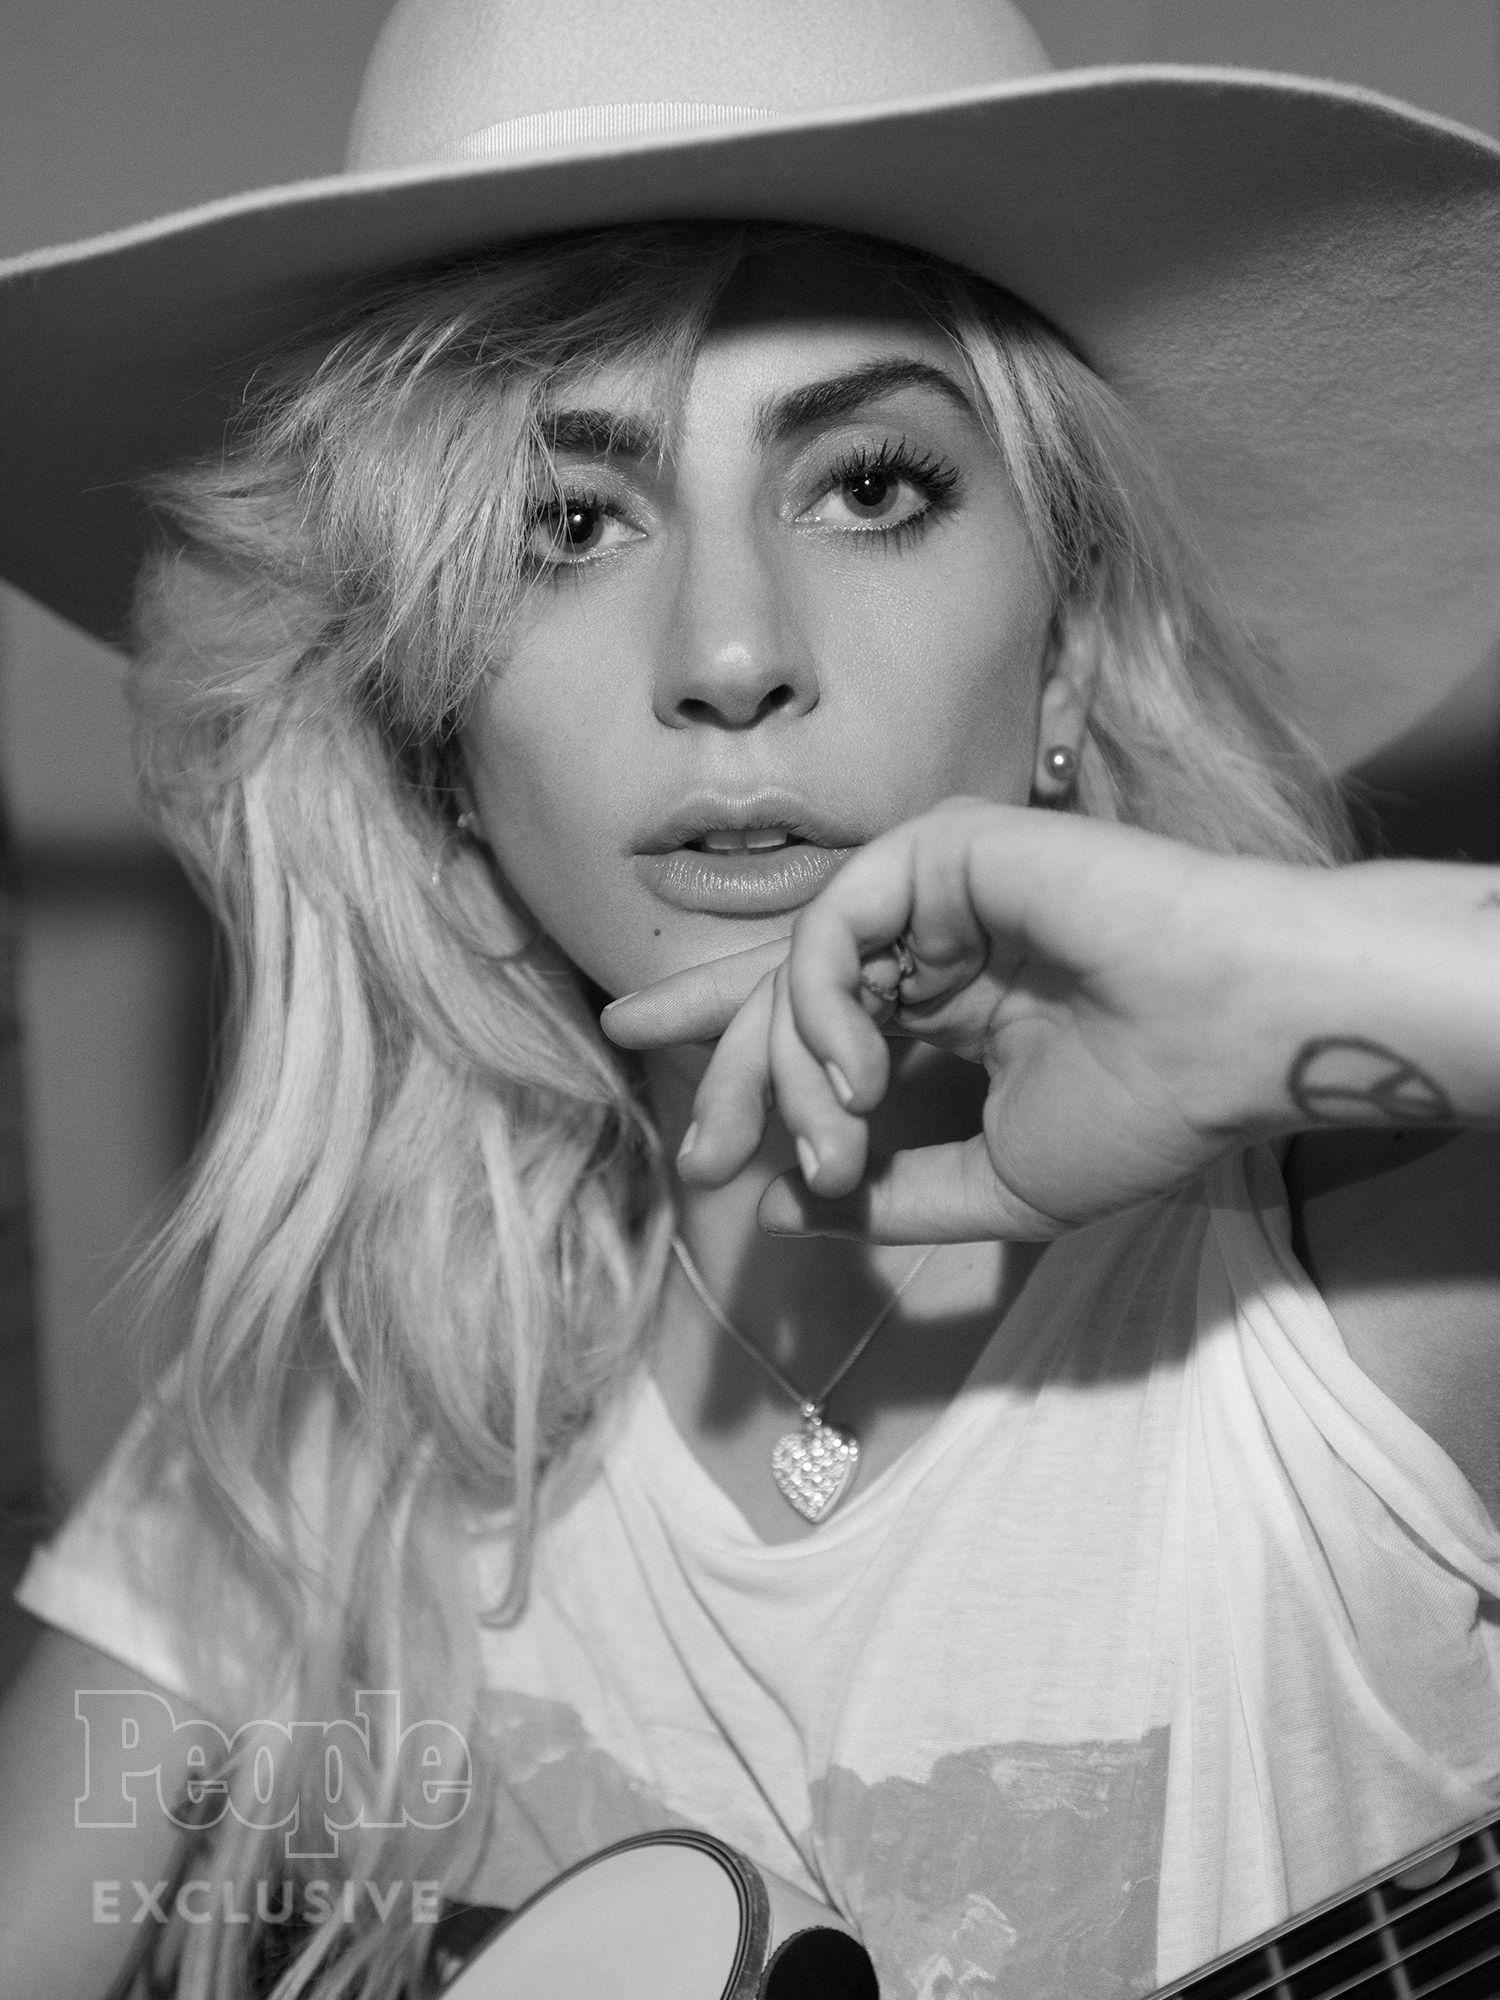 Joanne Lady Gaga Wallpapers - Top Free